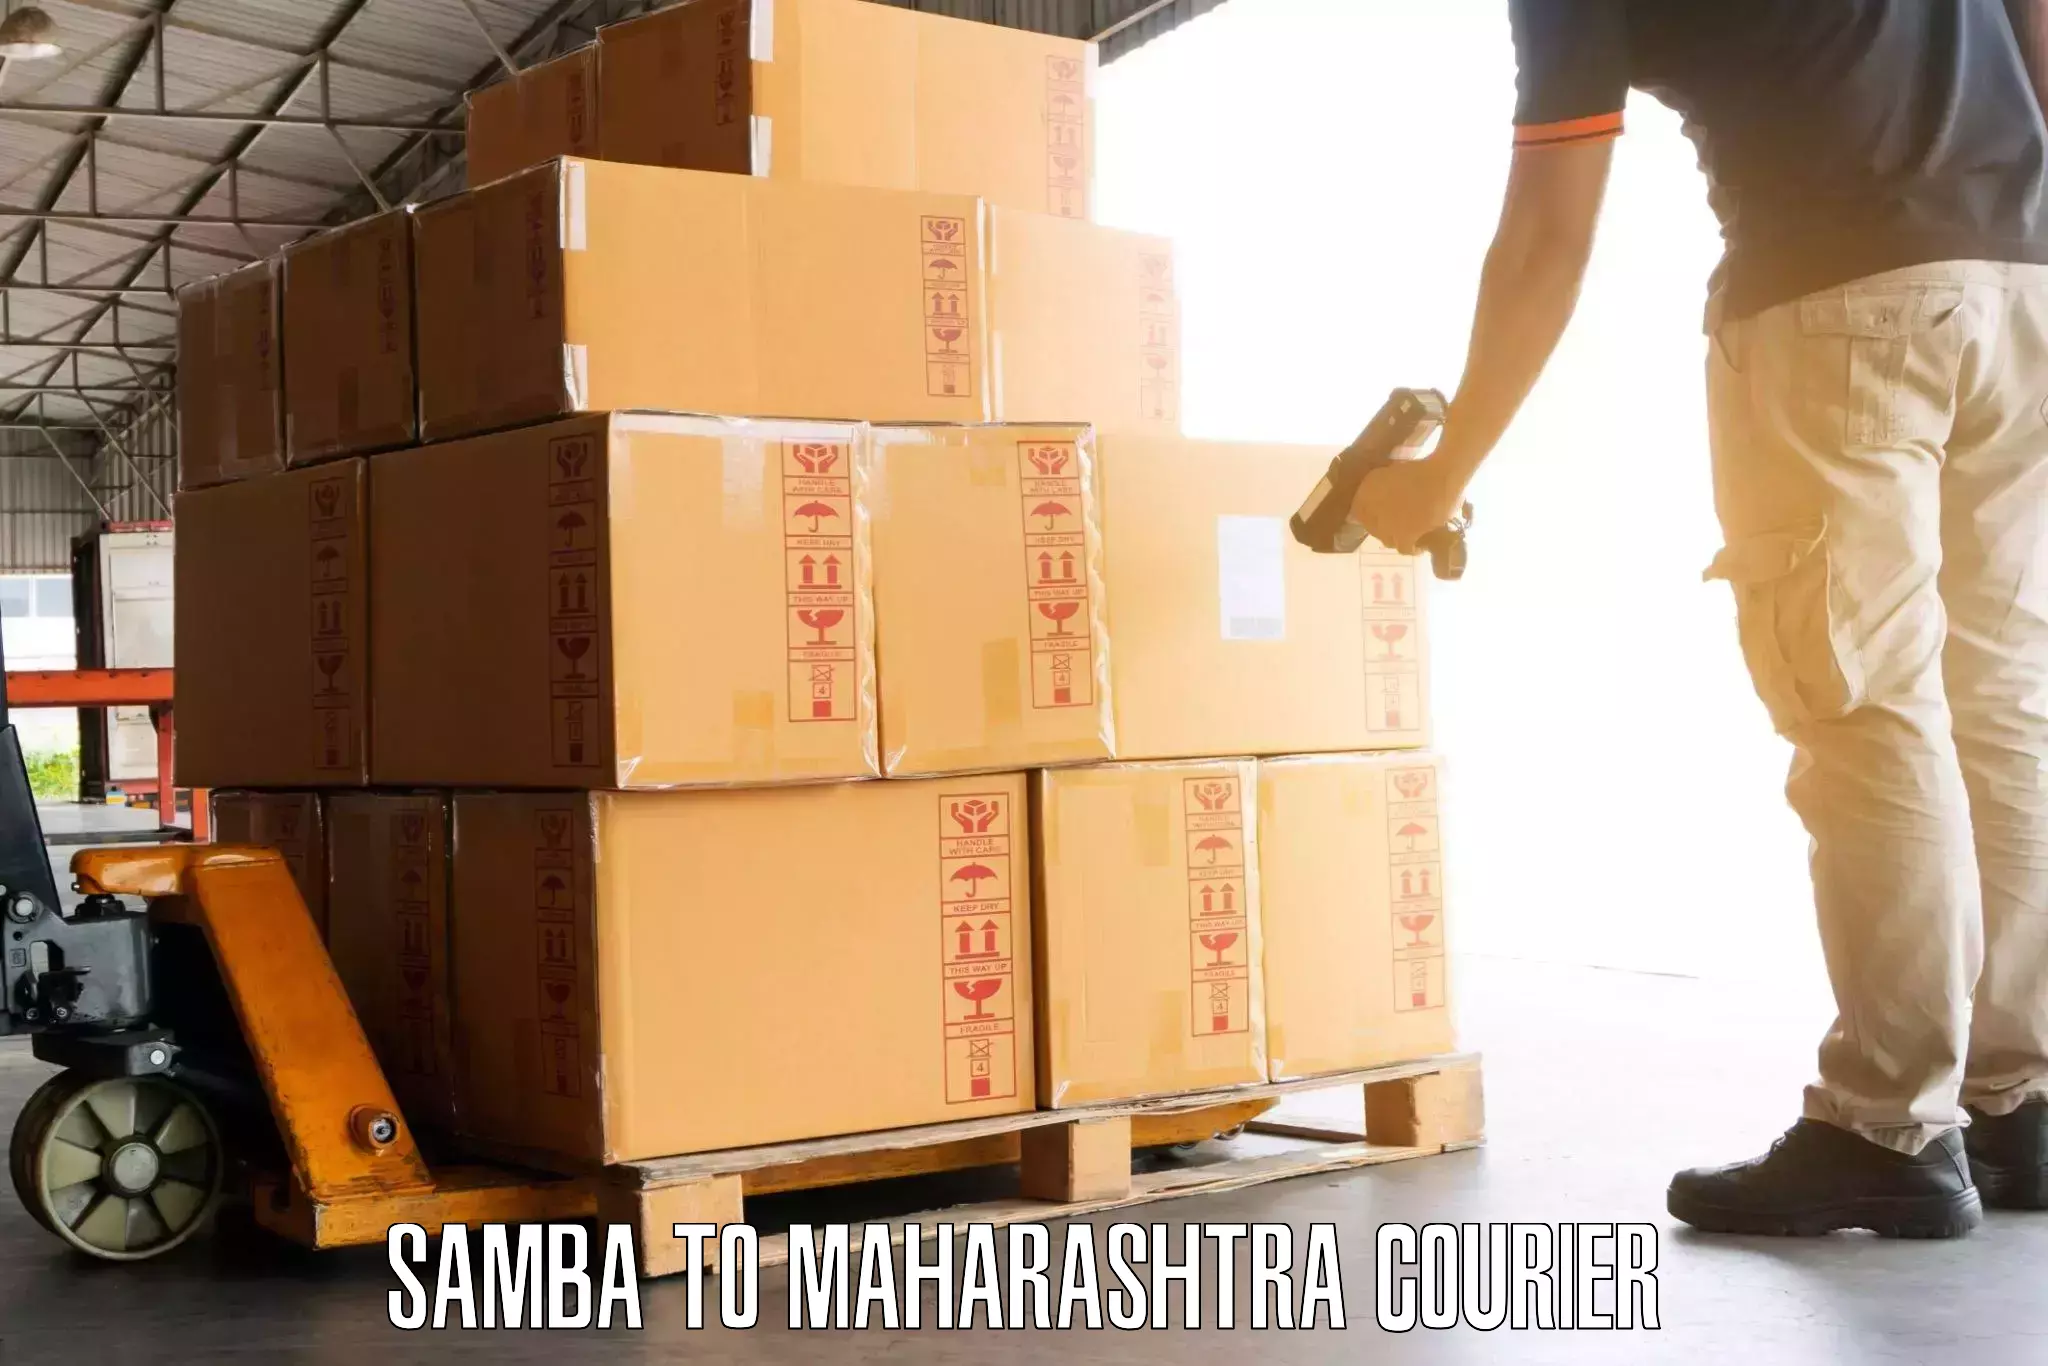 Luggage transport company Samba to Maharashtra